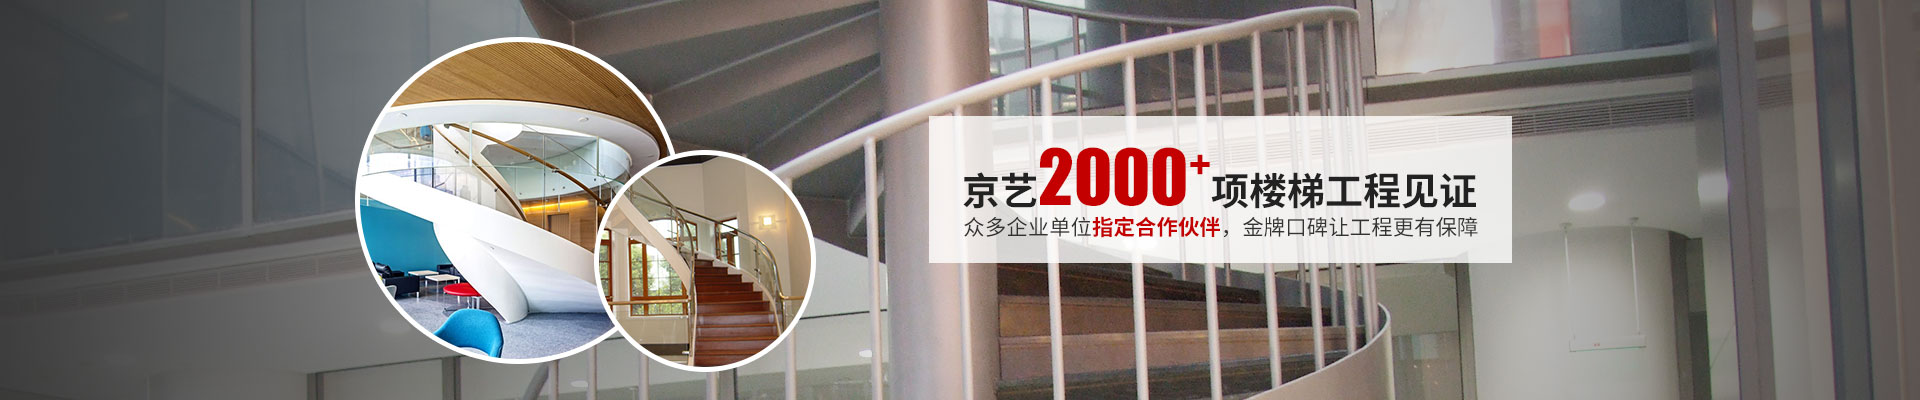 京艺·2000项楼梯工程见证